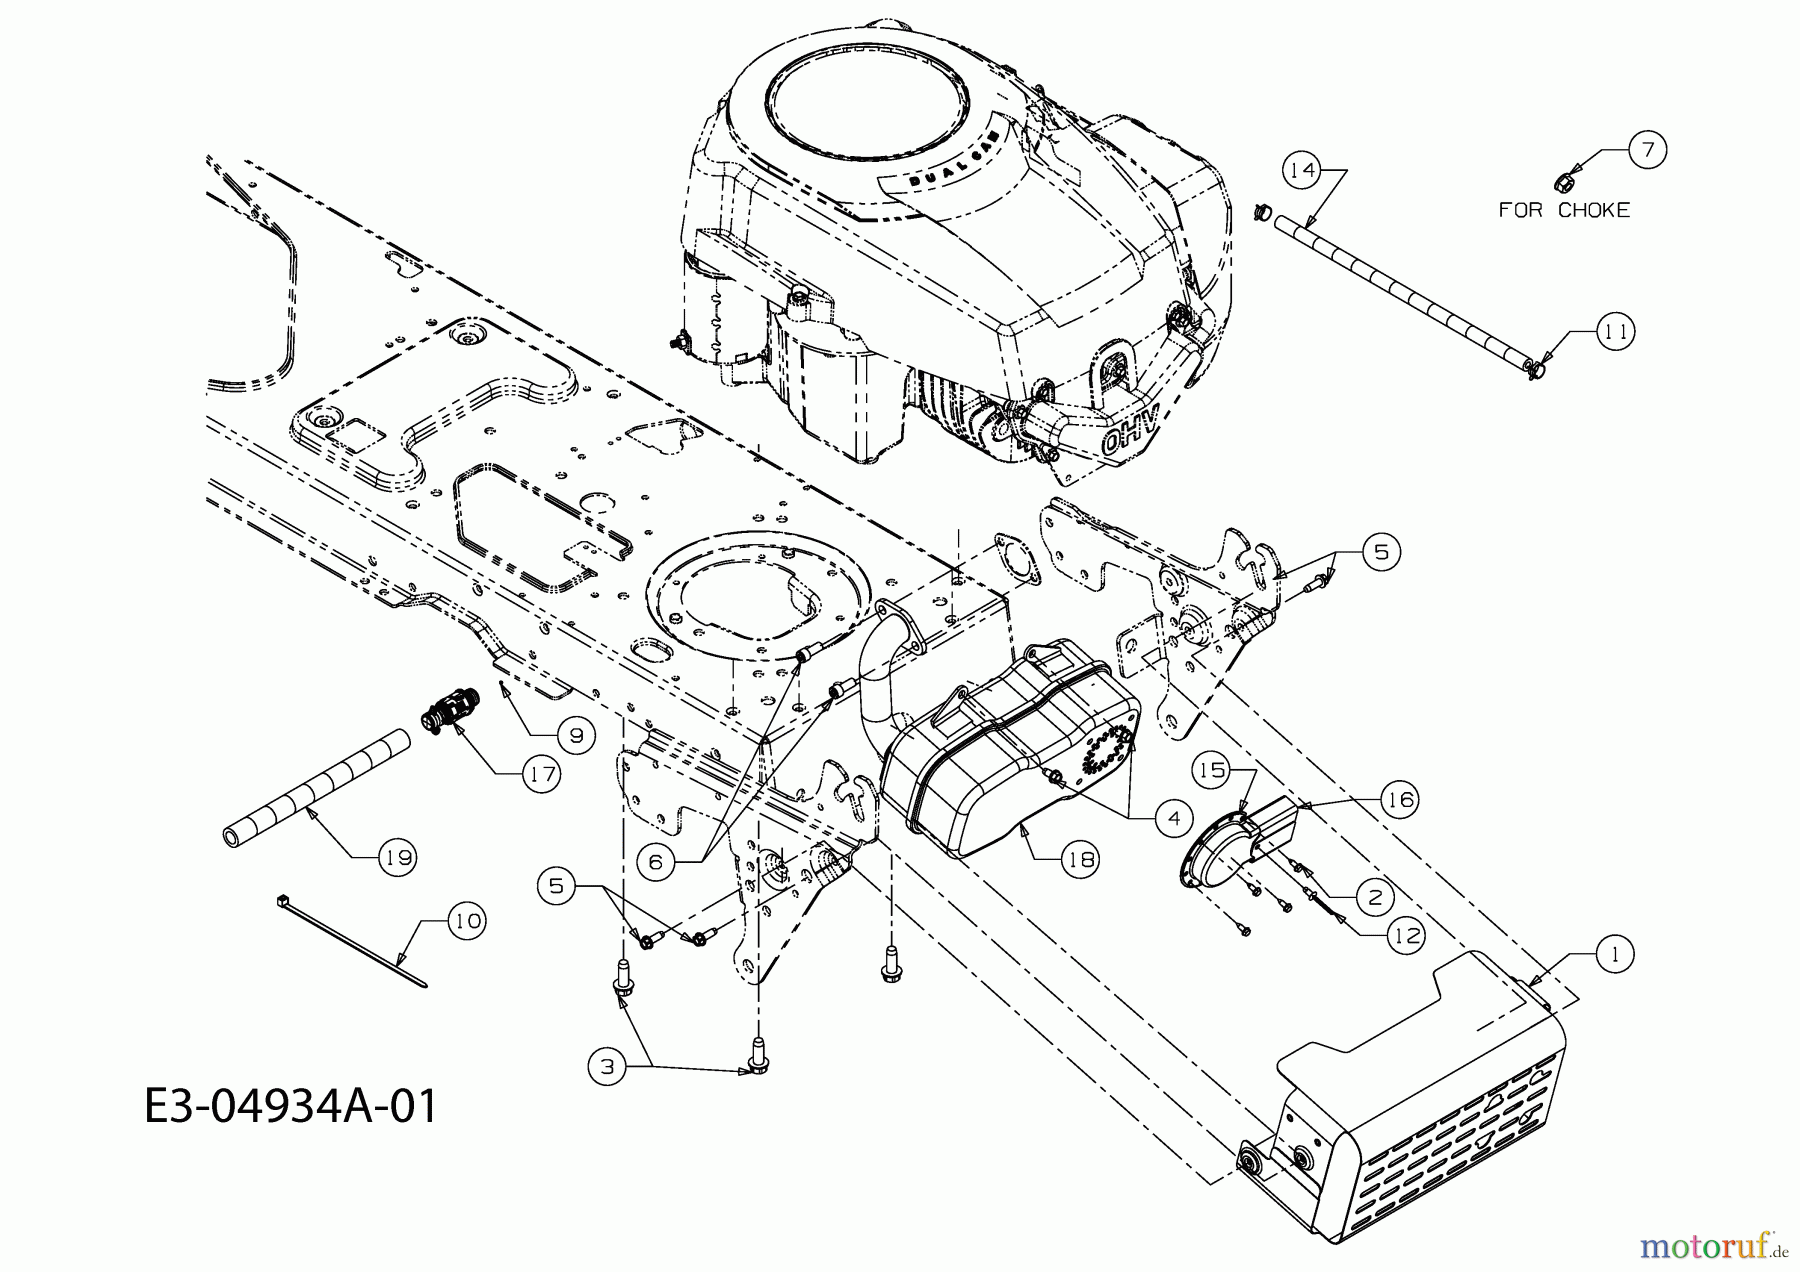  Gutbrod Rasentraktoren GLX 105 RH 13AV51GN490  (2009) Motorzubehör